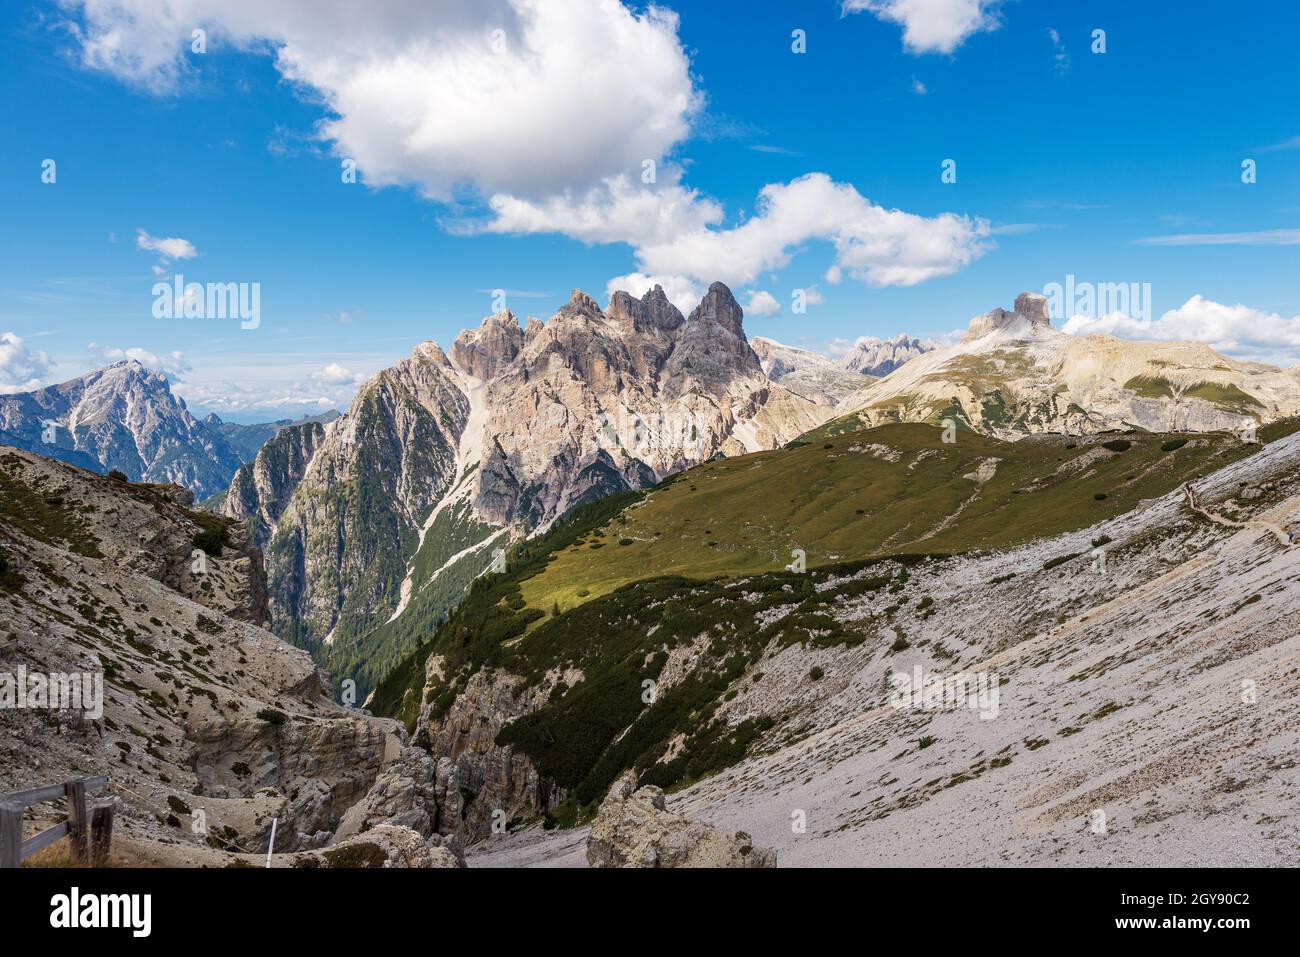 Sexten Dolomites from Tre Cime di Lavaredo. Peaks of Picco di Vallandro, Monte Rudo, Croda dei Rondoi, Torre dei Scarperi, Cima Piatta Alta. Italy. Stock Photo